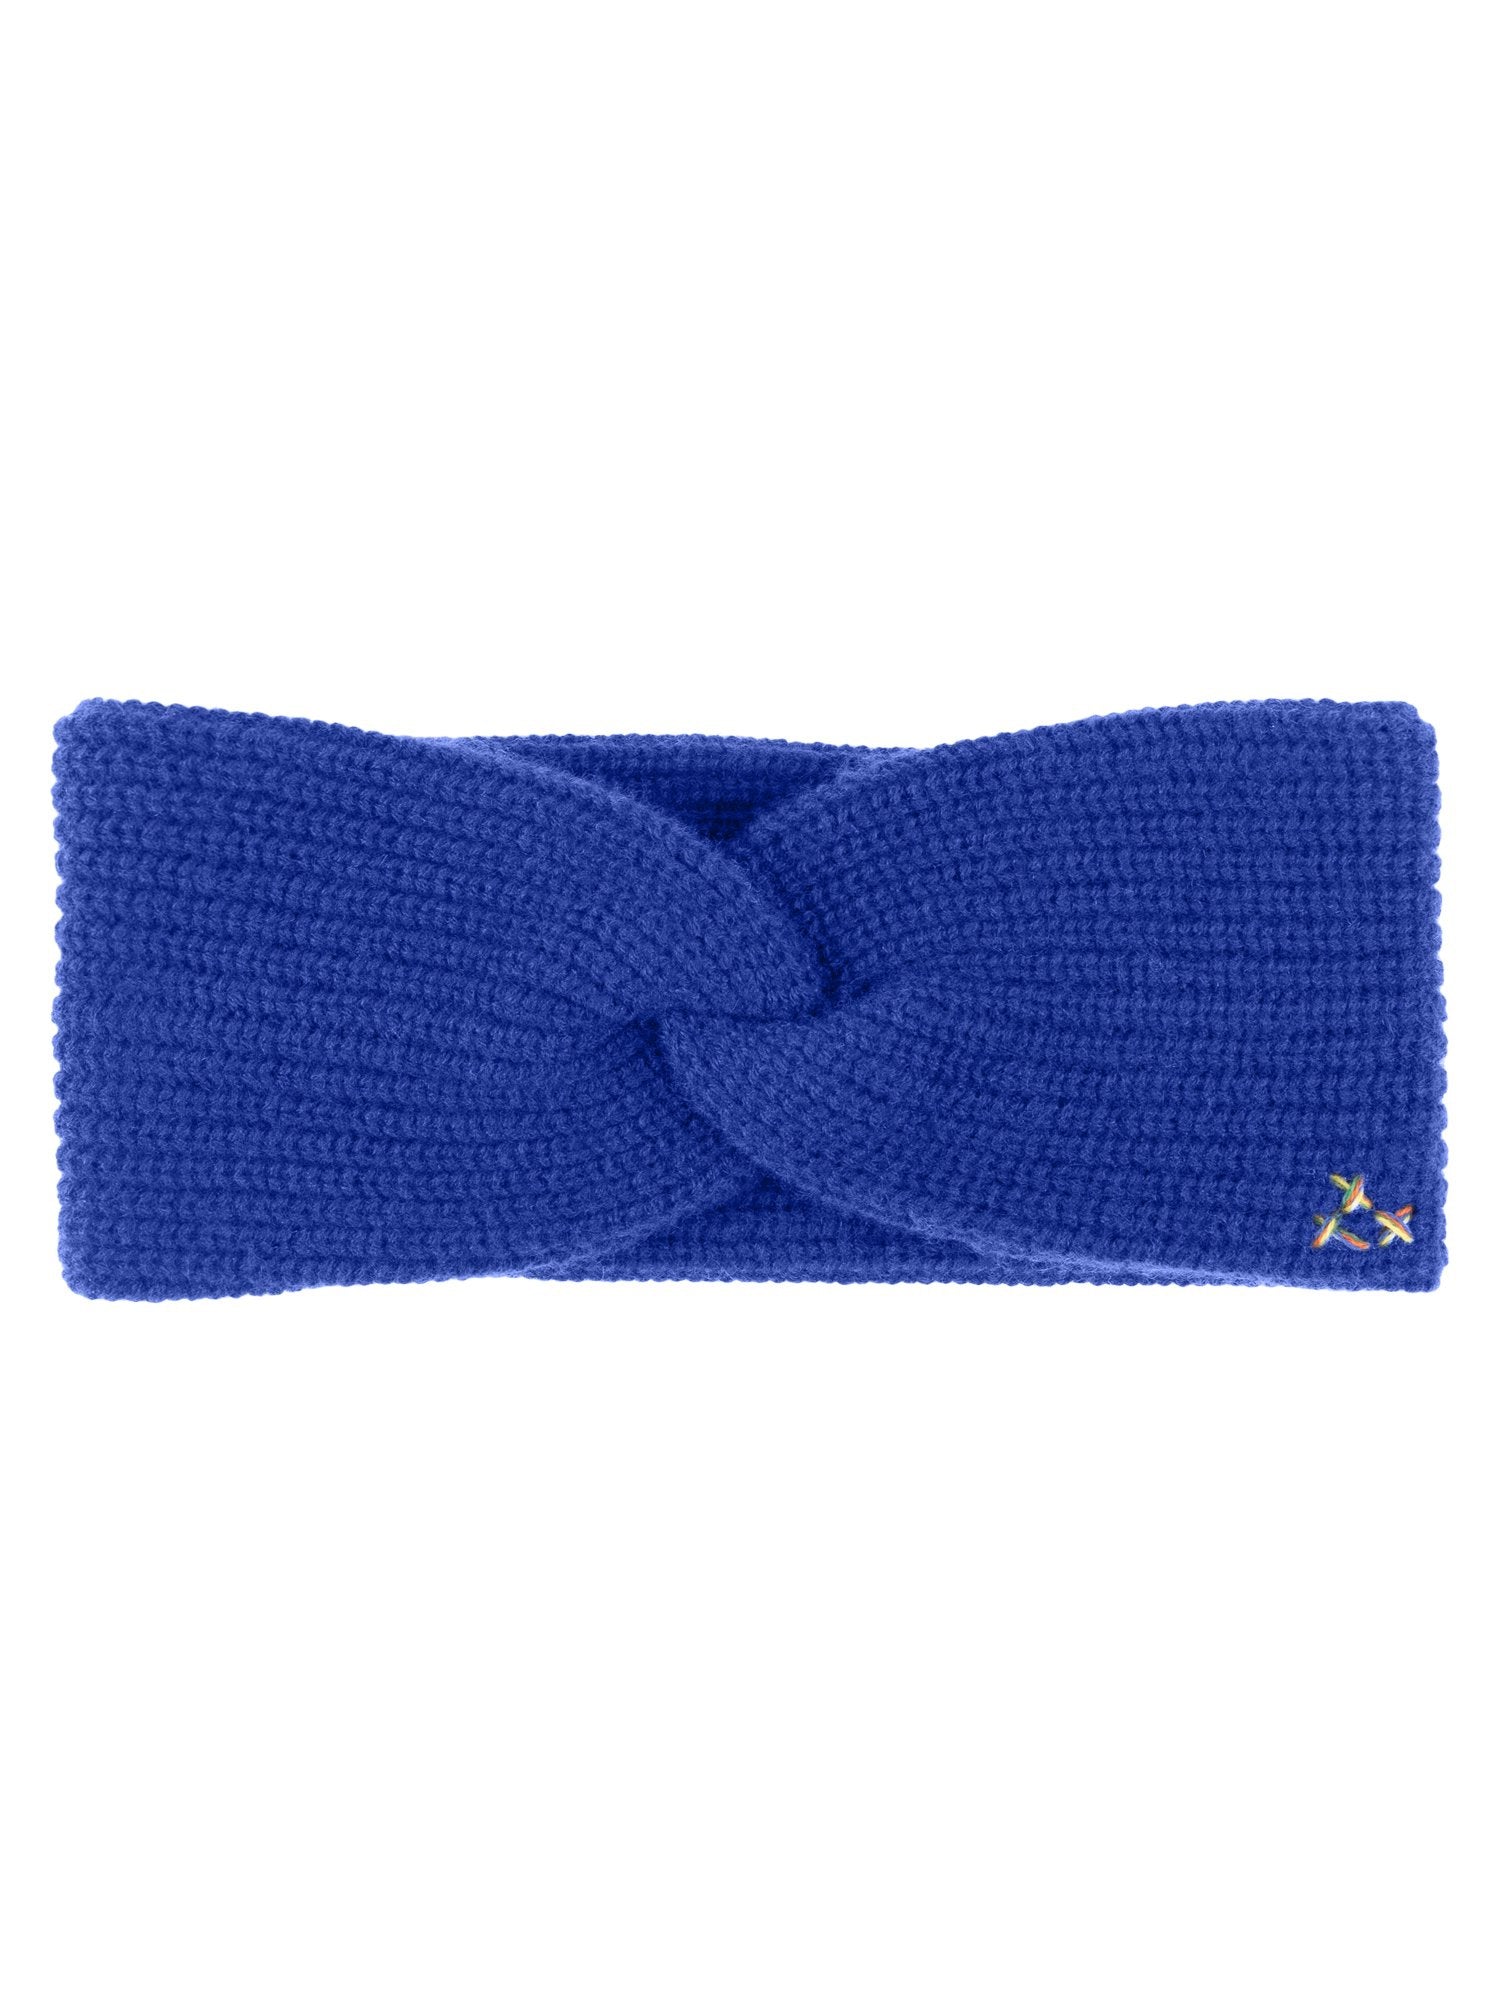 RAINBOW CASHMERE Gestricktes Stirnband mit attraktivem einfarbigem Design | königsblau